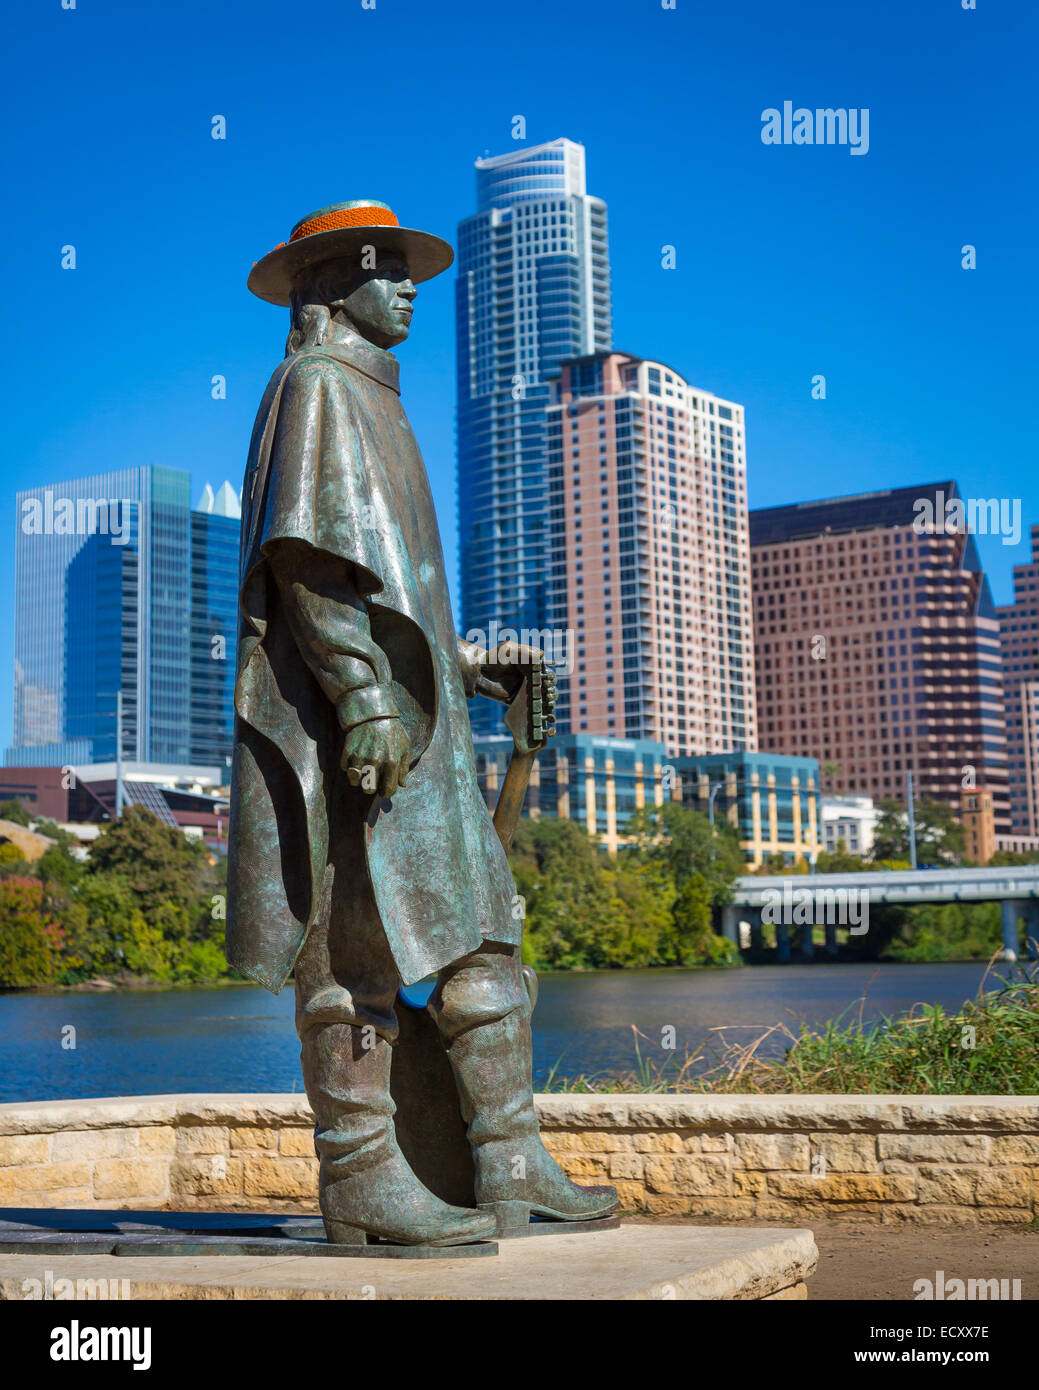 Stevie Ray Vaughan Memorial est une sculpture en bronze de Stevie Ray Vaughan par Ralph Helmick, situé à Austin, Texas Banque D'Images